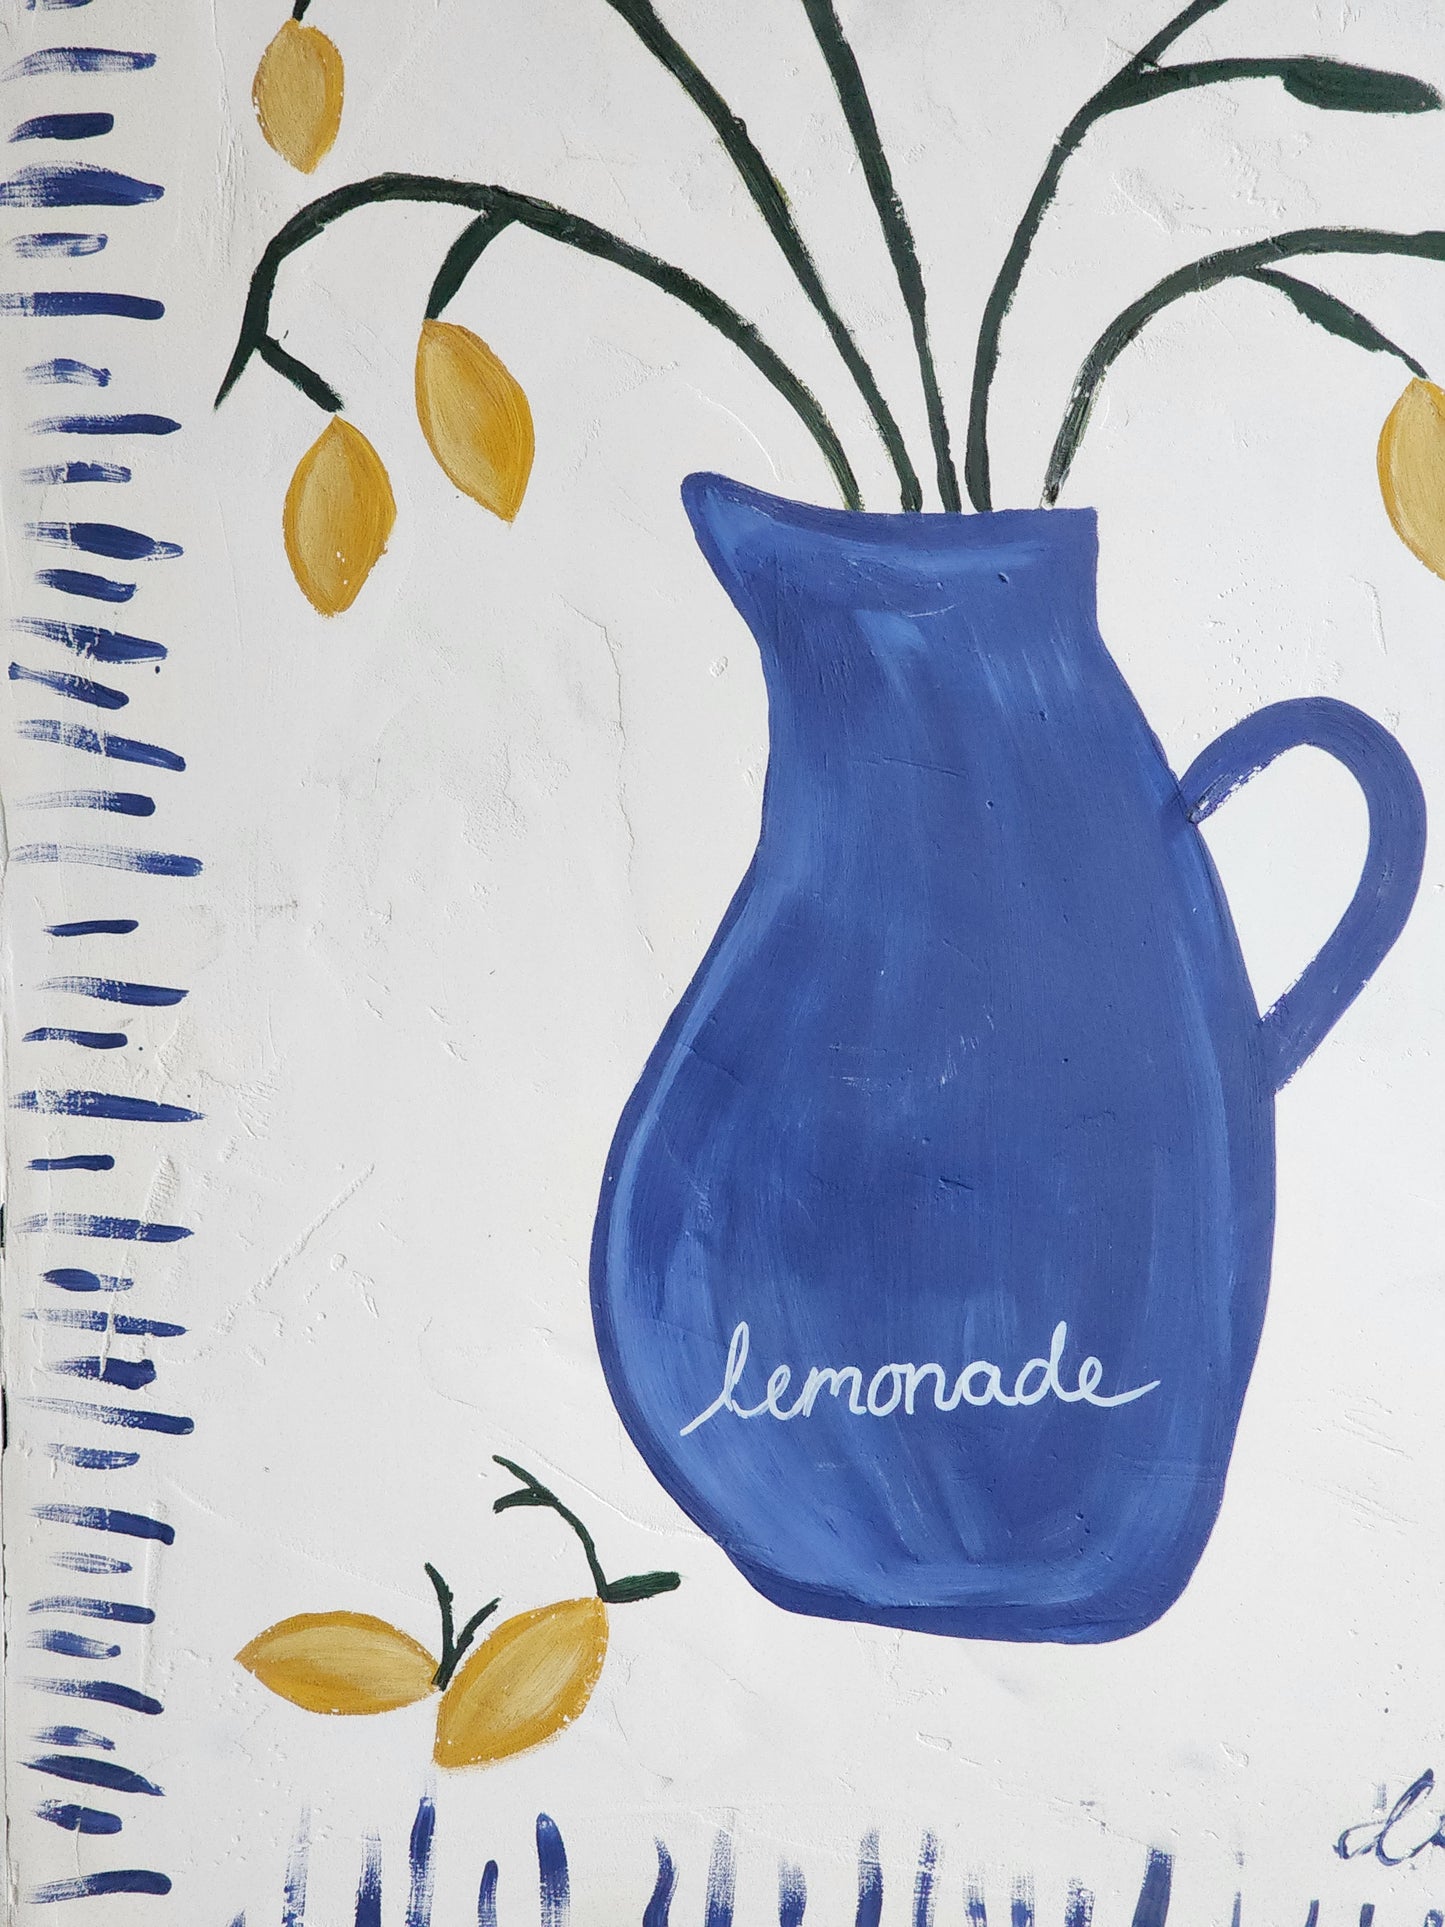 Lemonade painting (SALE)